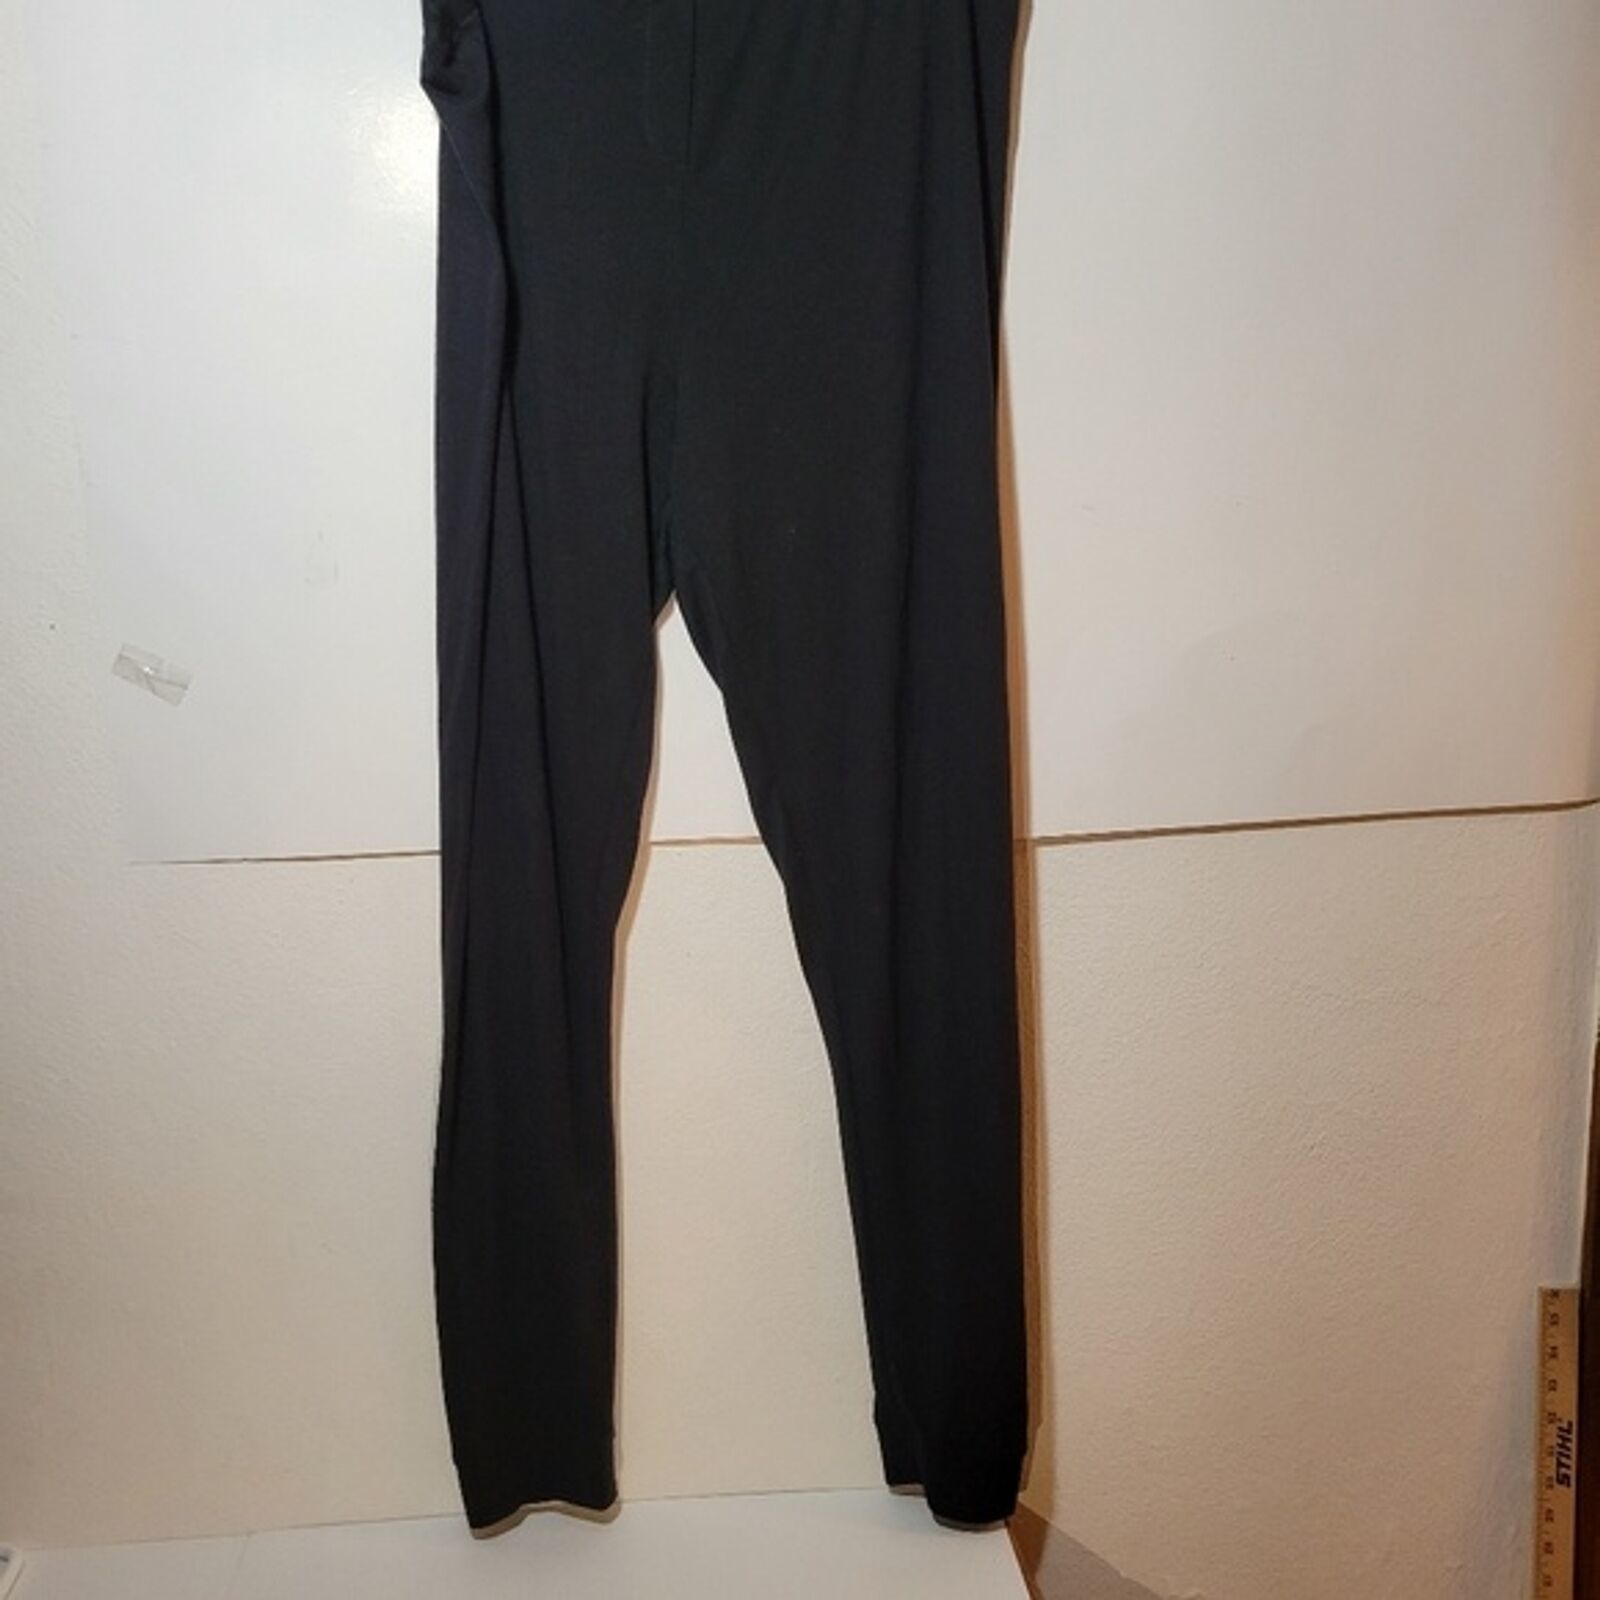 Womens Jockey Thermal Long Pants Black Size and 50 similar items